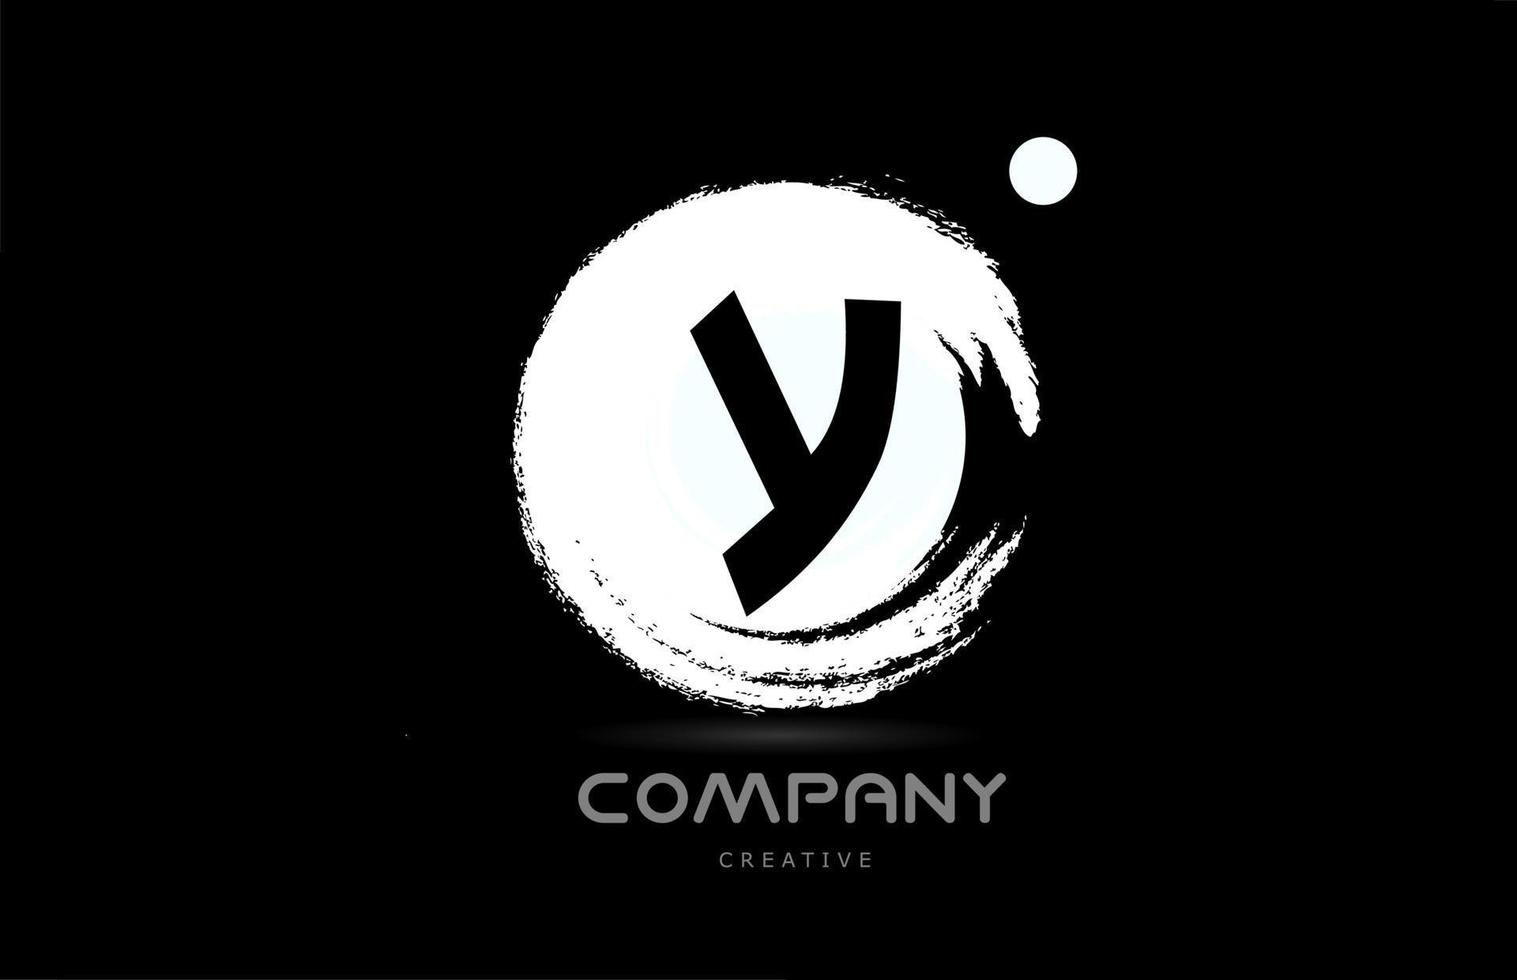 y design de ícone do logotipo da letra do alfabeto grunge com letras de estilo japonês em preto e branco. modelo criativo para empresa e negócios vetor